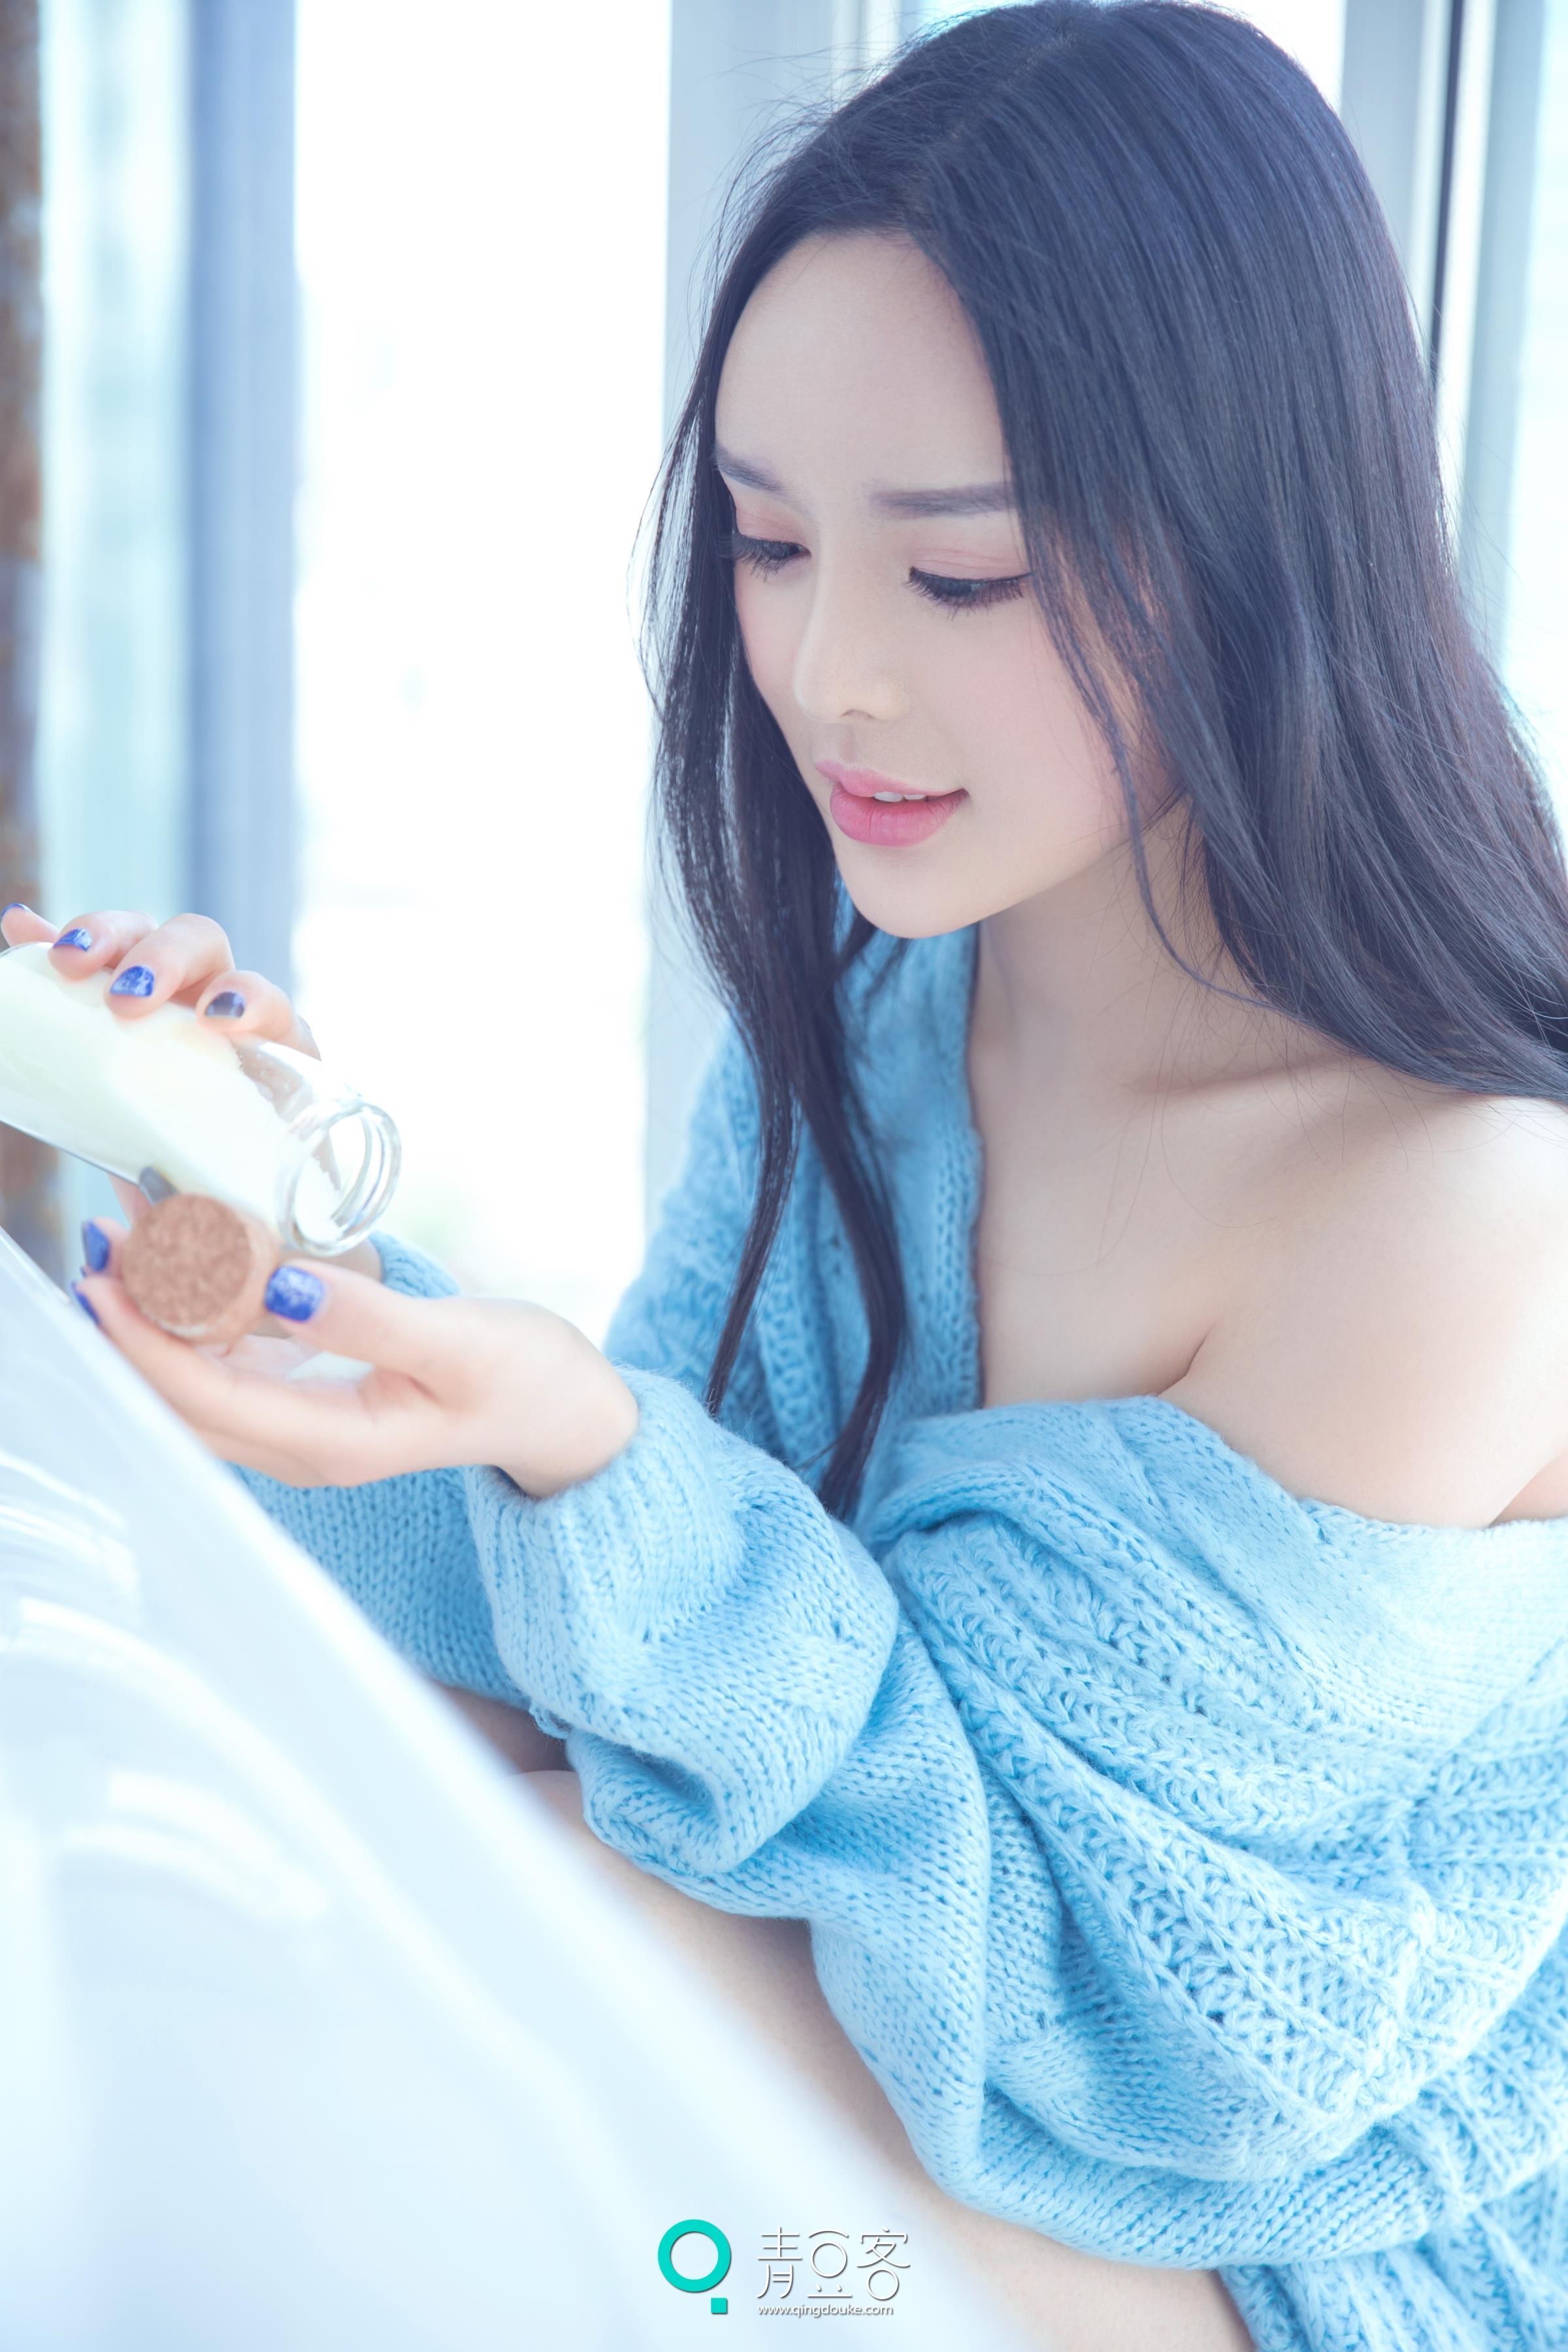 [QingDouKe青豆客]2017-05-13 晓迪 蓝色抹胸外套与性感情趣高中女生制服私房写真集,